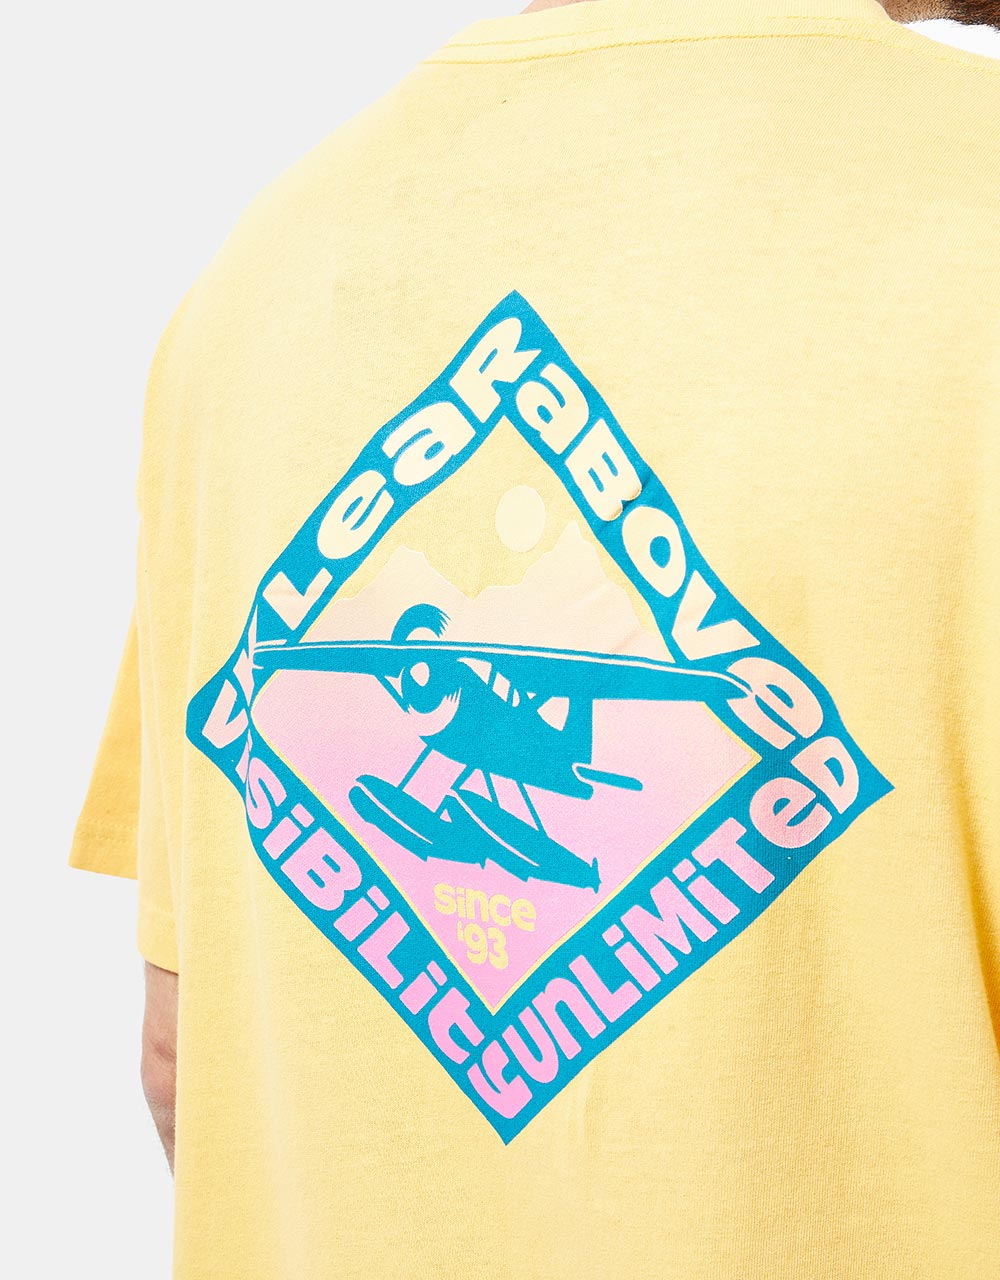 Kavu Floatboat T-Shirt - Amber Yellow